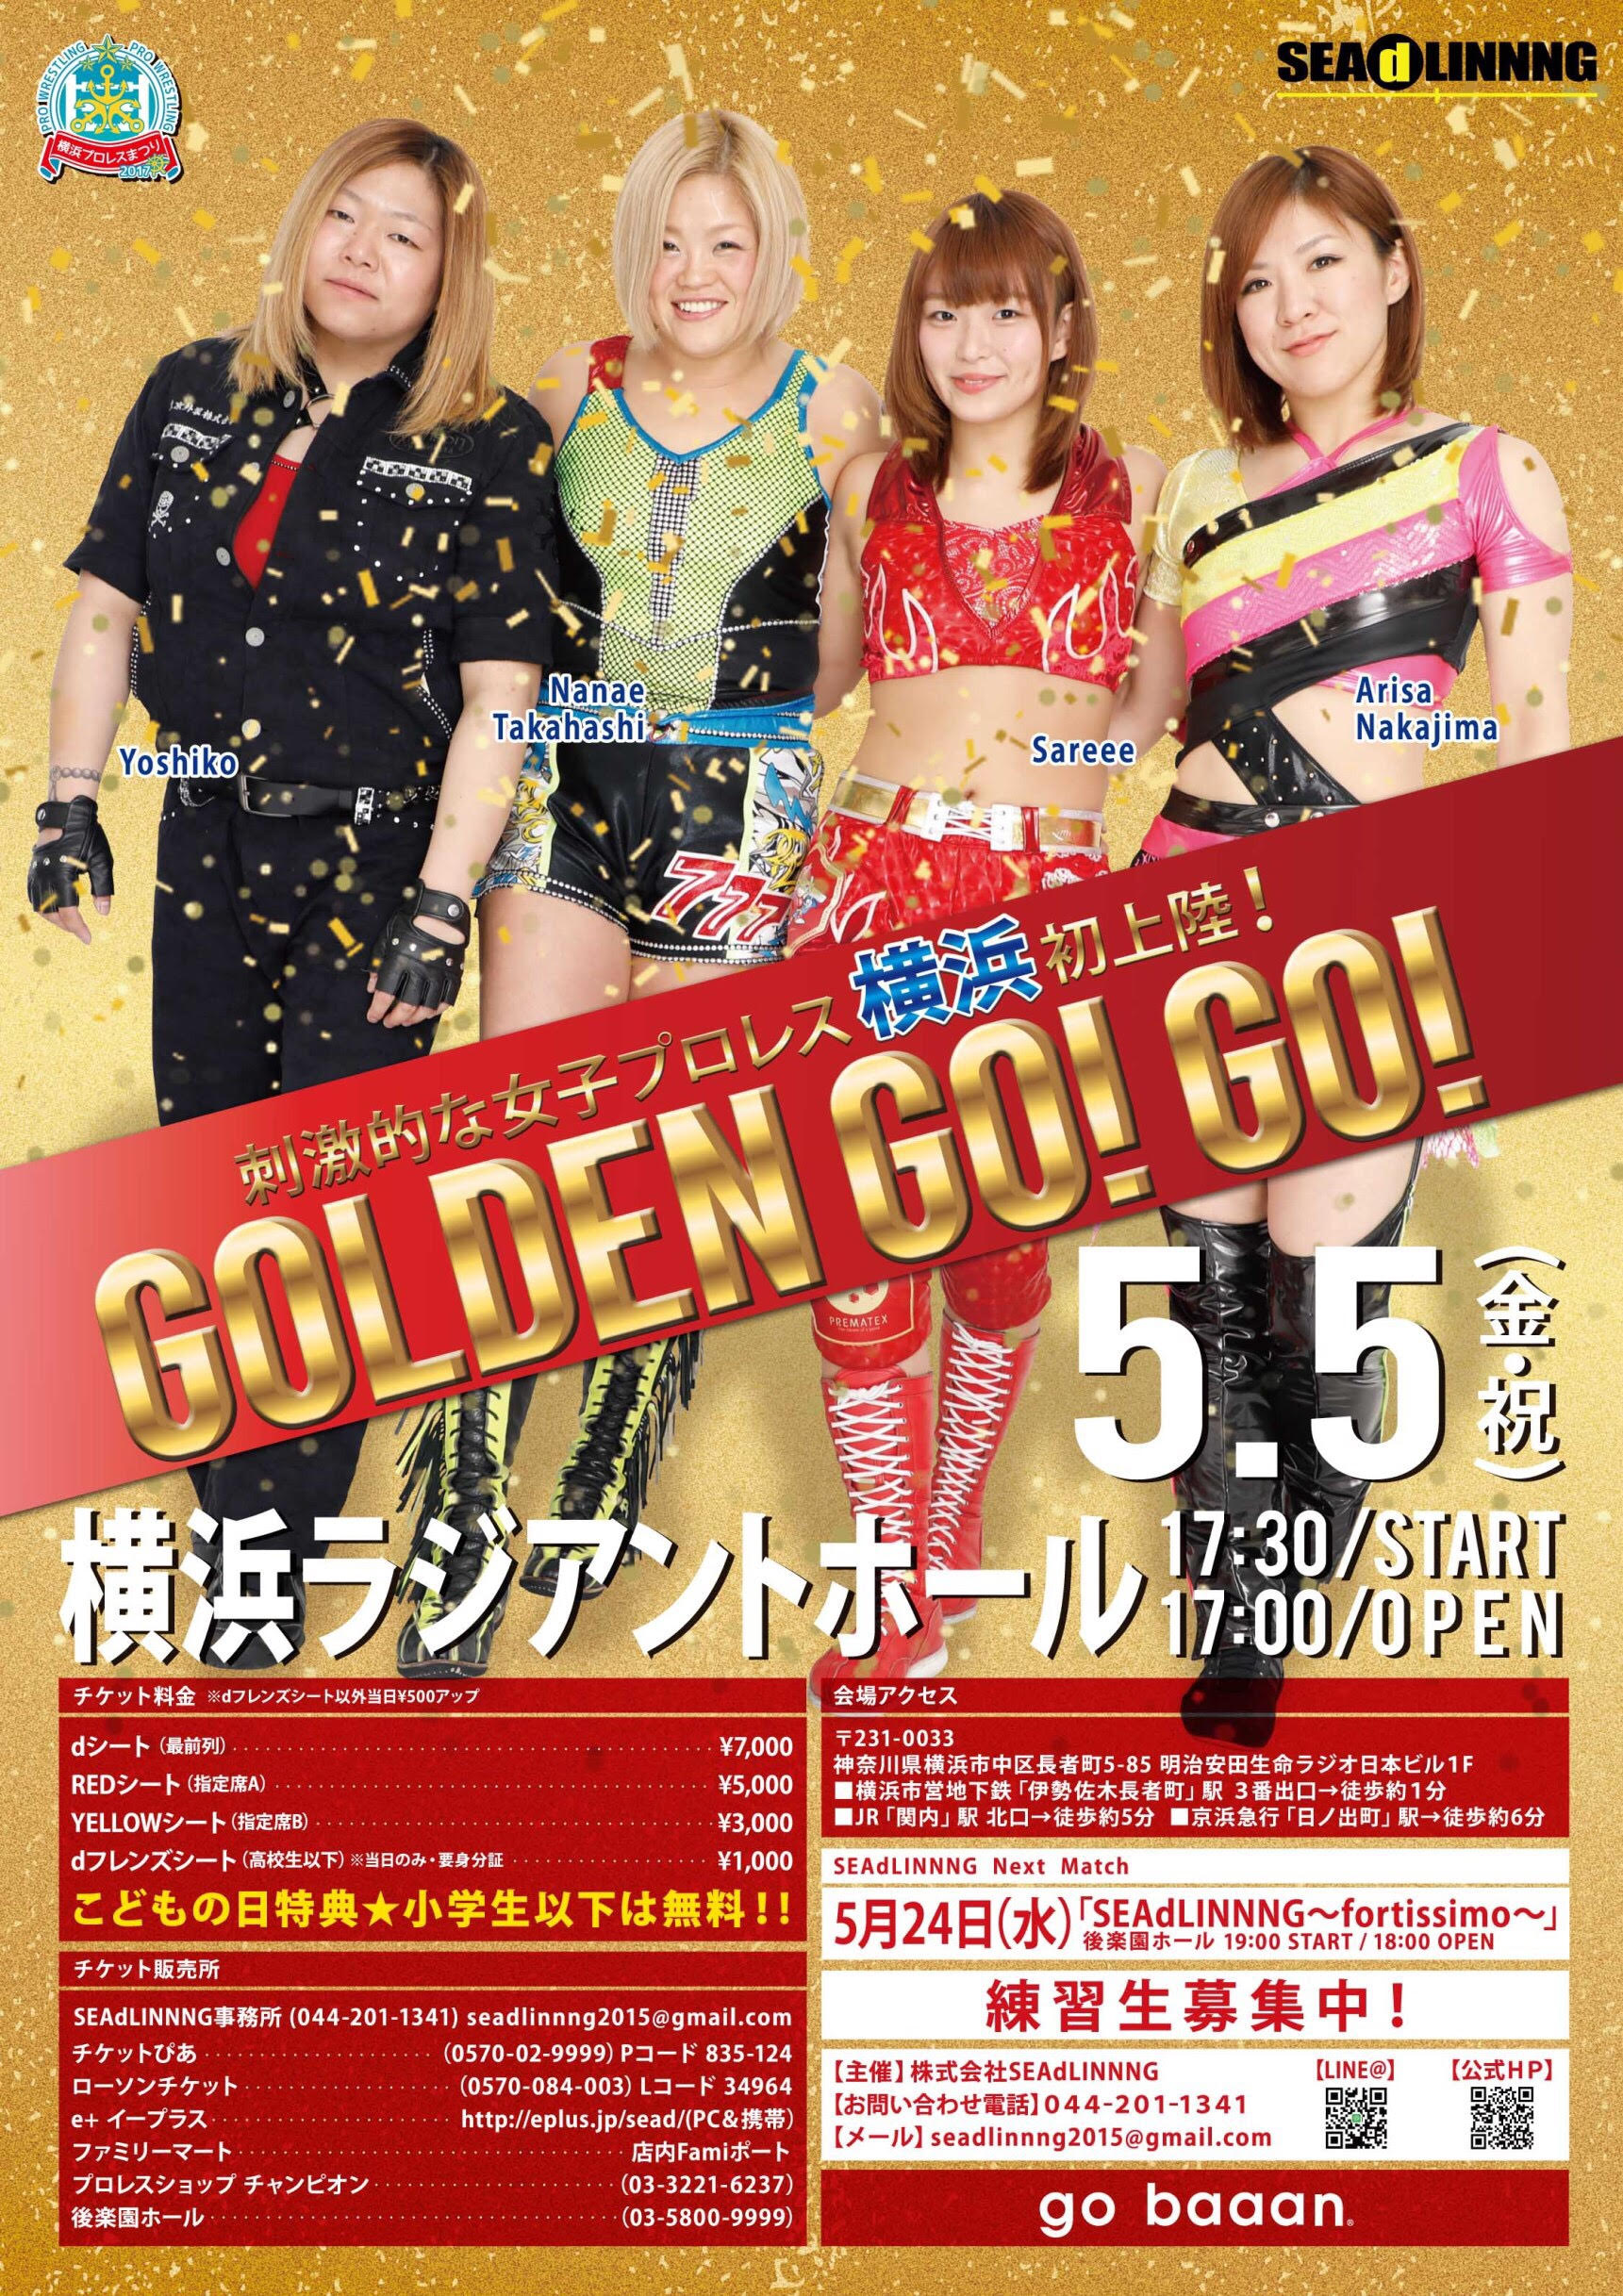 【SEAdLINNNG】～GOLDEN GO！ GO！～横浜プロレス祭り2017 　5月5日(金・祝)17:30START 17:00OPEN